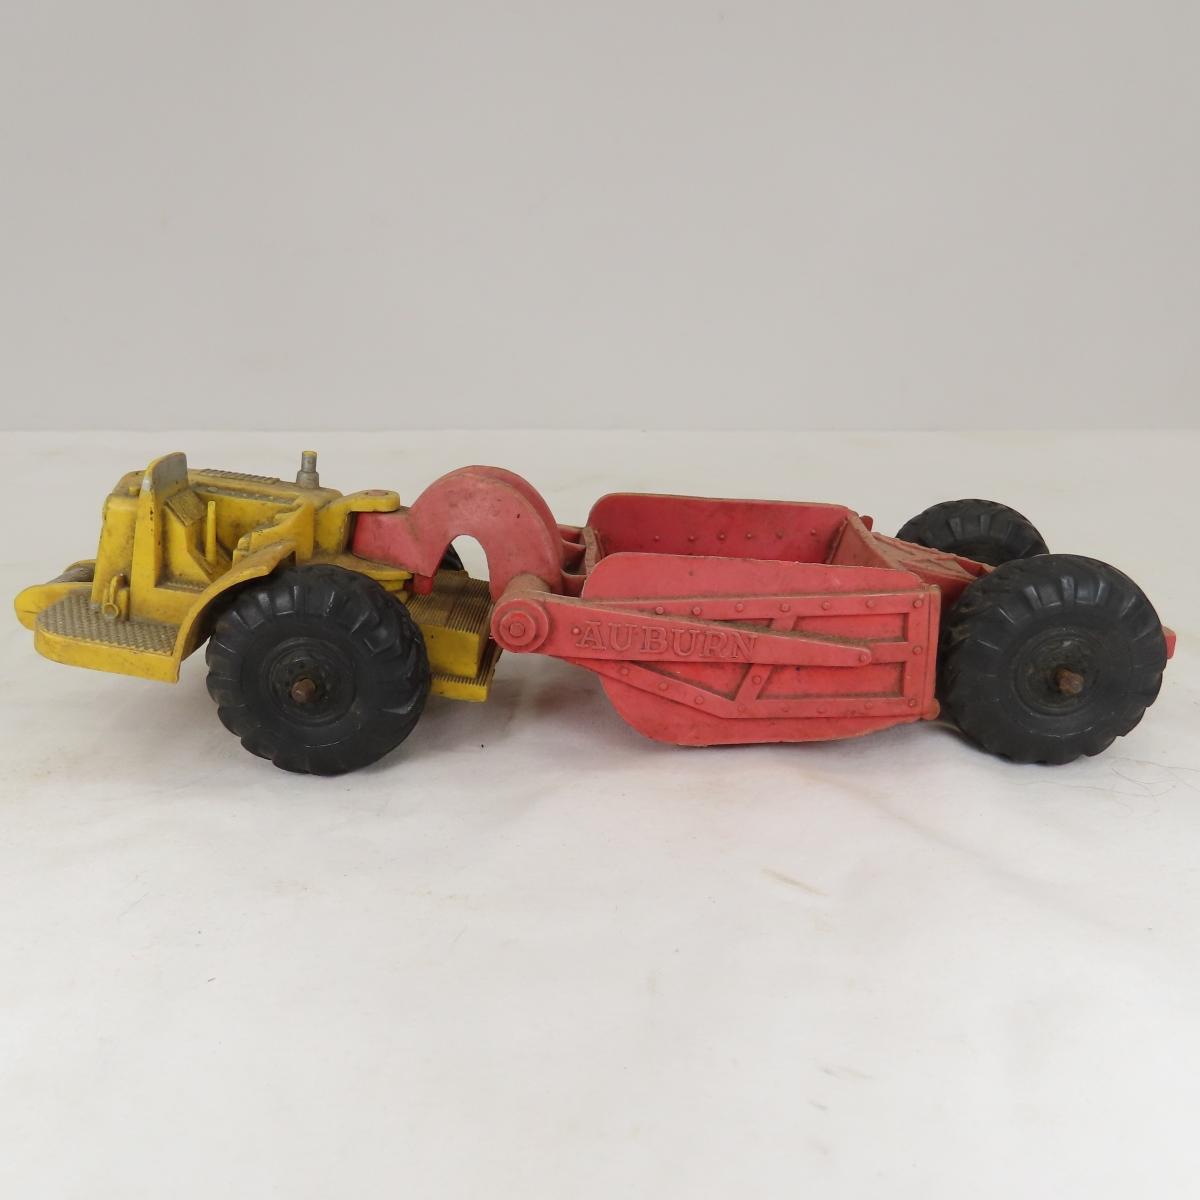 Slik Tractor, Hubley Tractor & Auburn Scraper